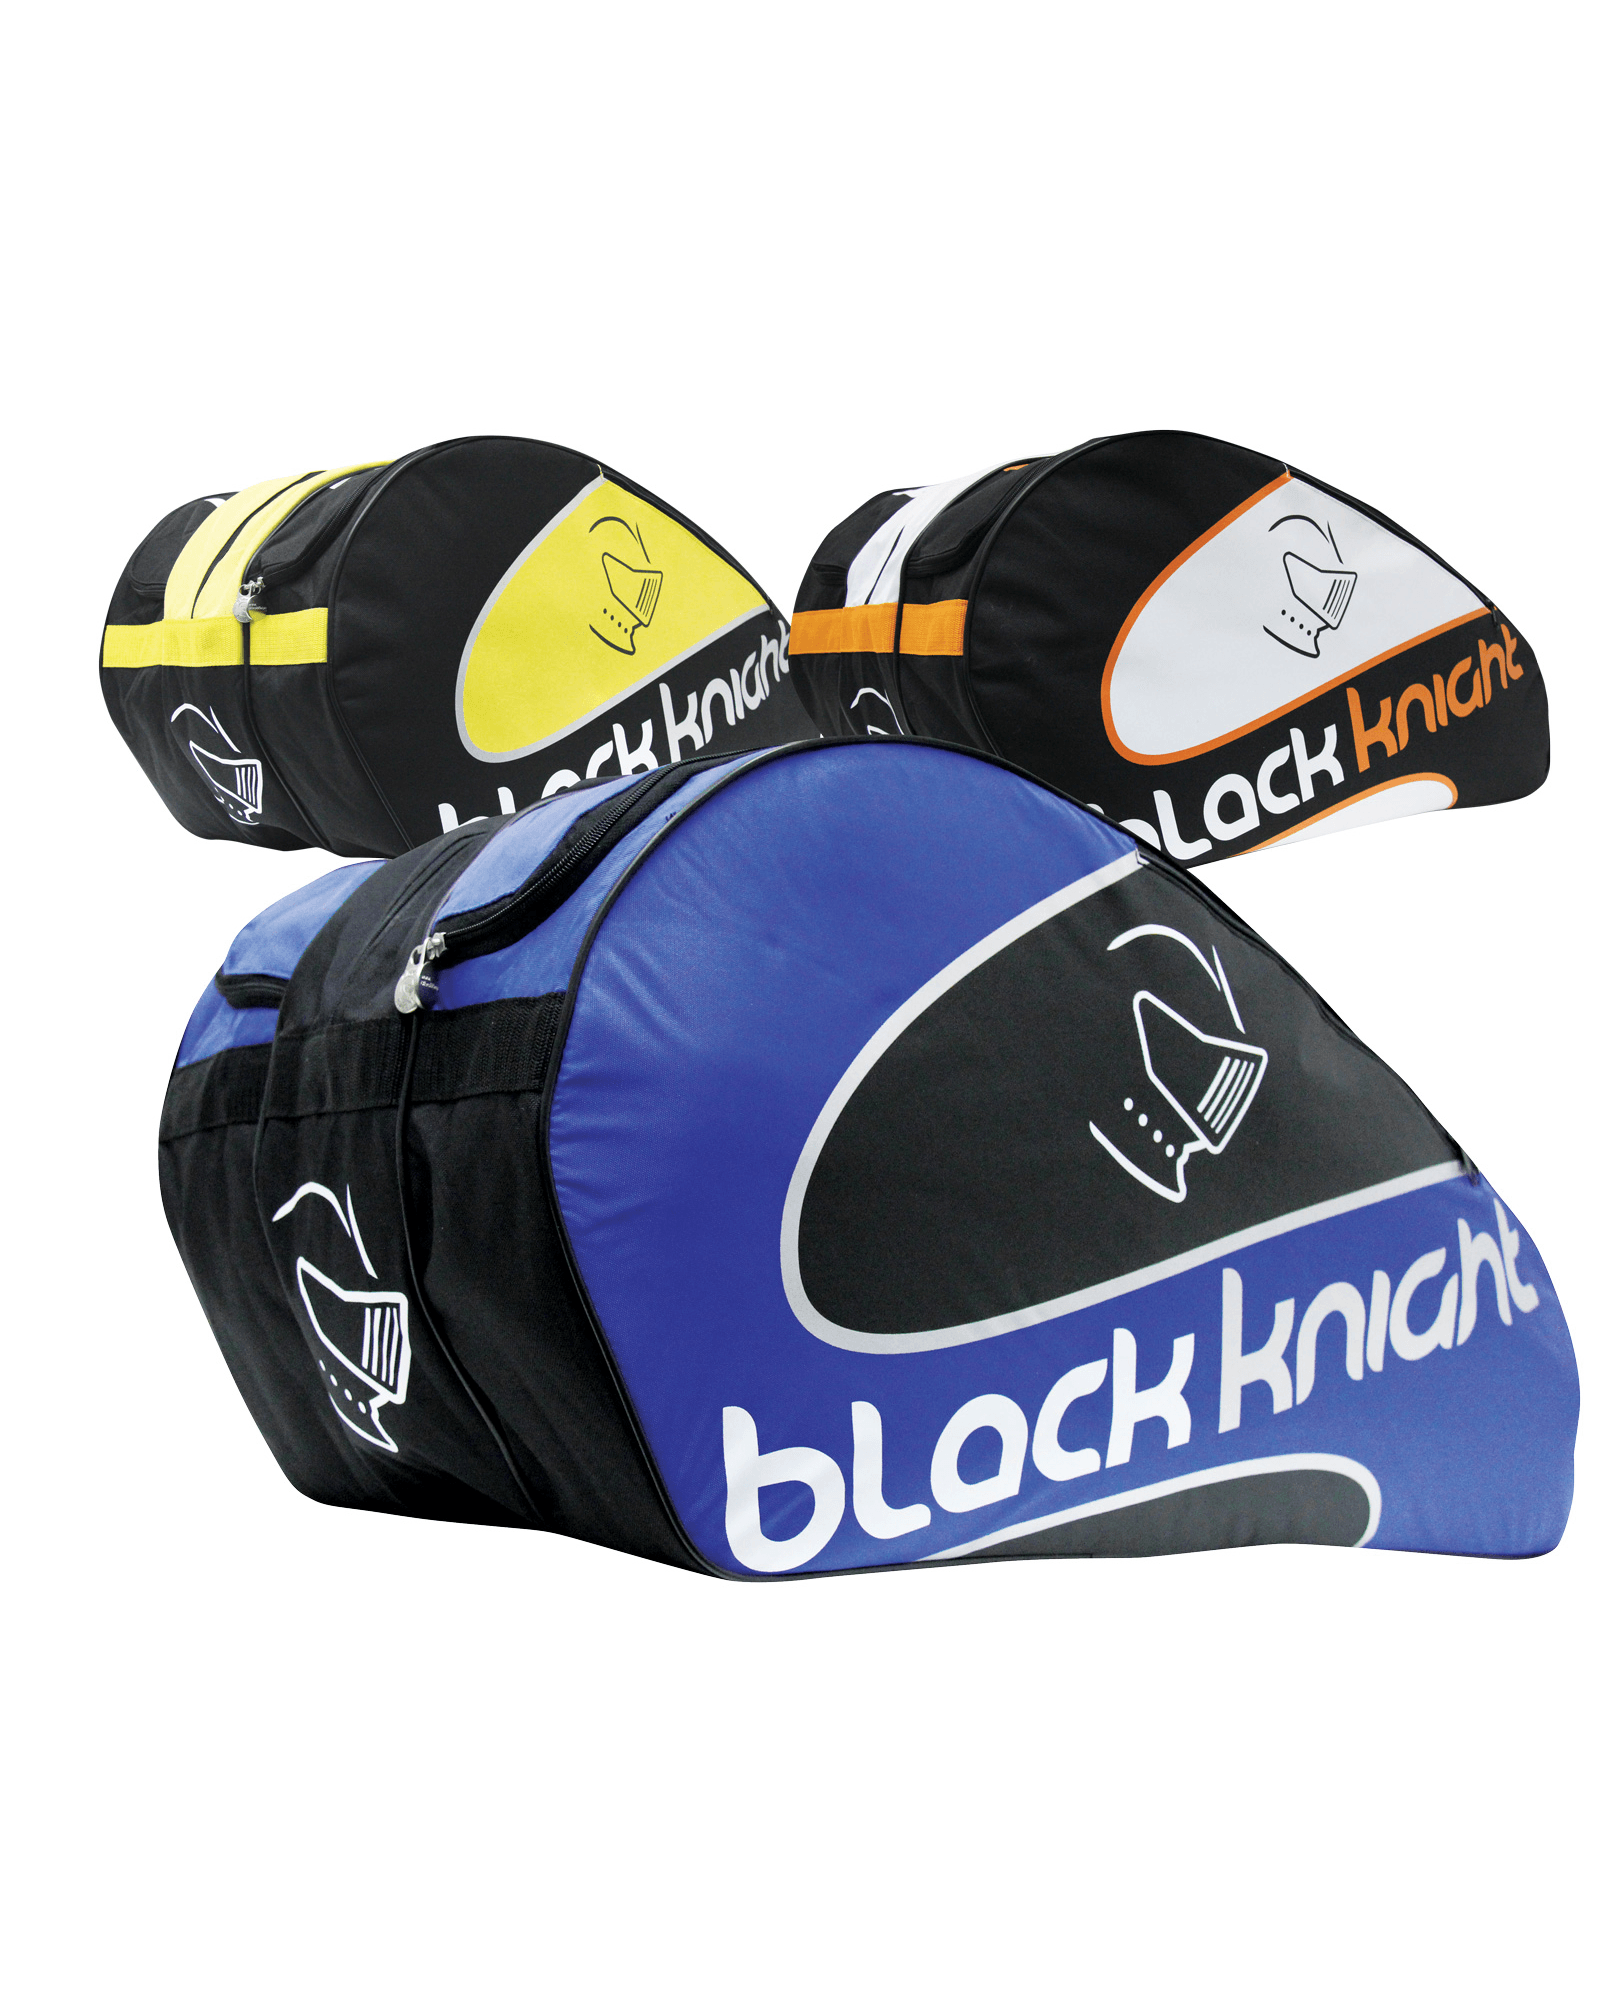 black-knight-squash-bags-bg-637